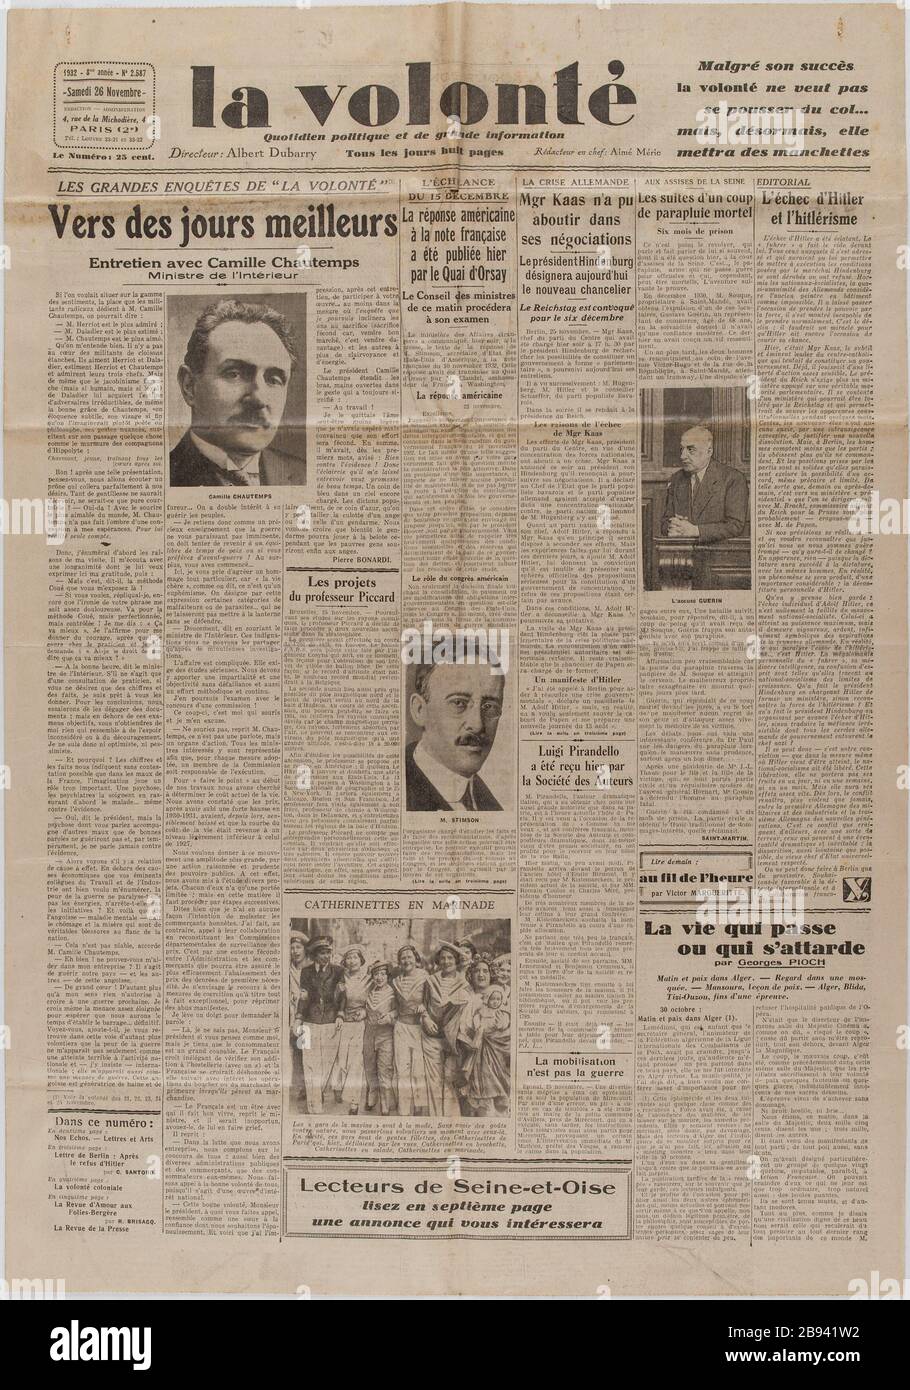 Newspaper 'The Will' of November 26, 1932 Journal 'La Volonté' du 26 novembre 1932. Papier imprimé, 1932. Musée du Général Leclerc de Hauteclocque et de la Libération de Paris, musée Jean Moulin. Stock Photo